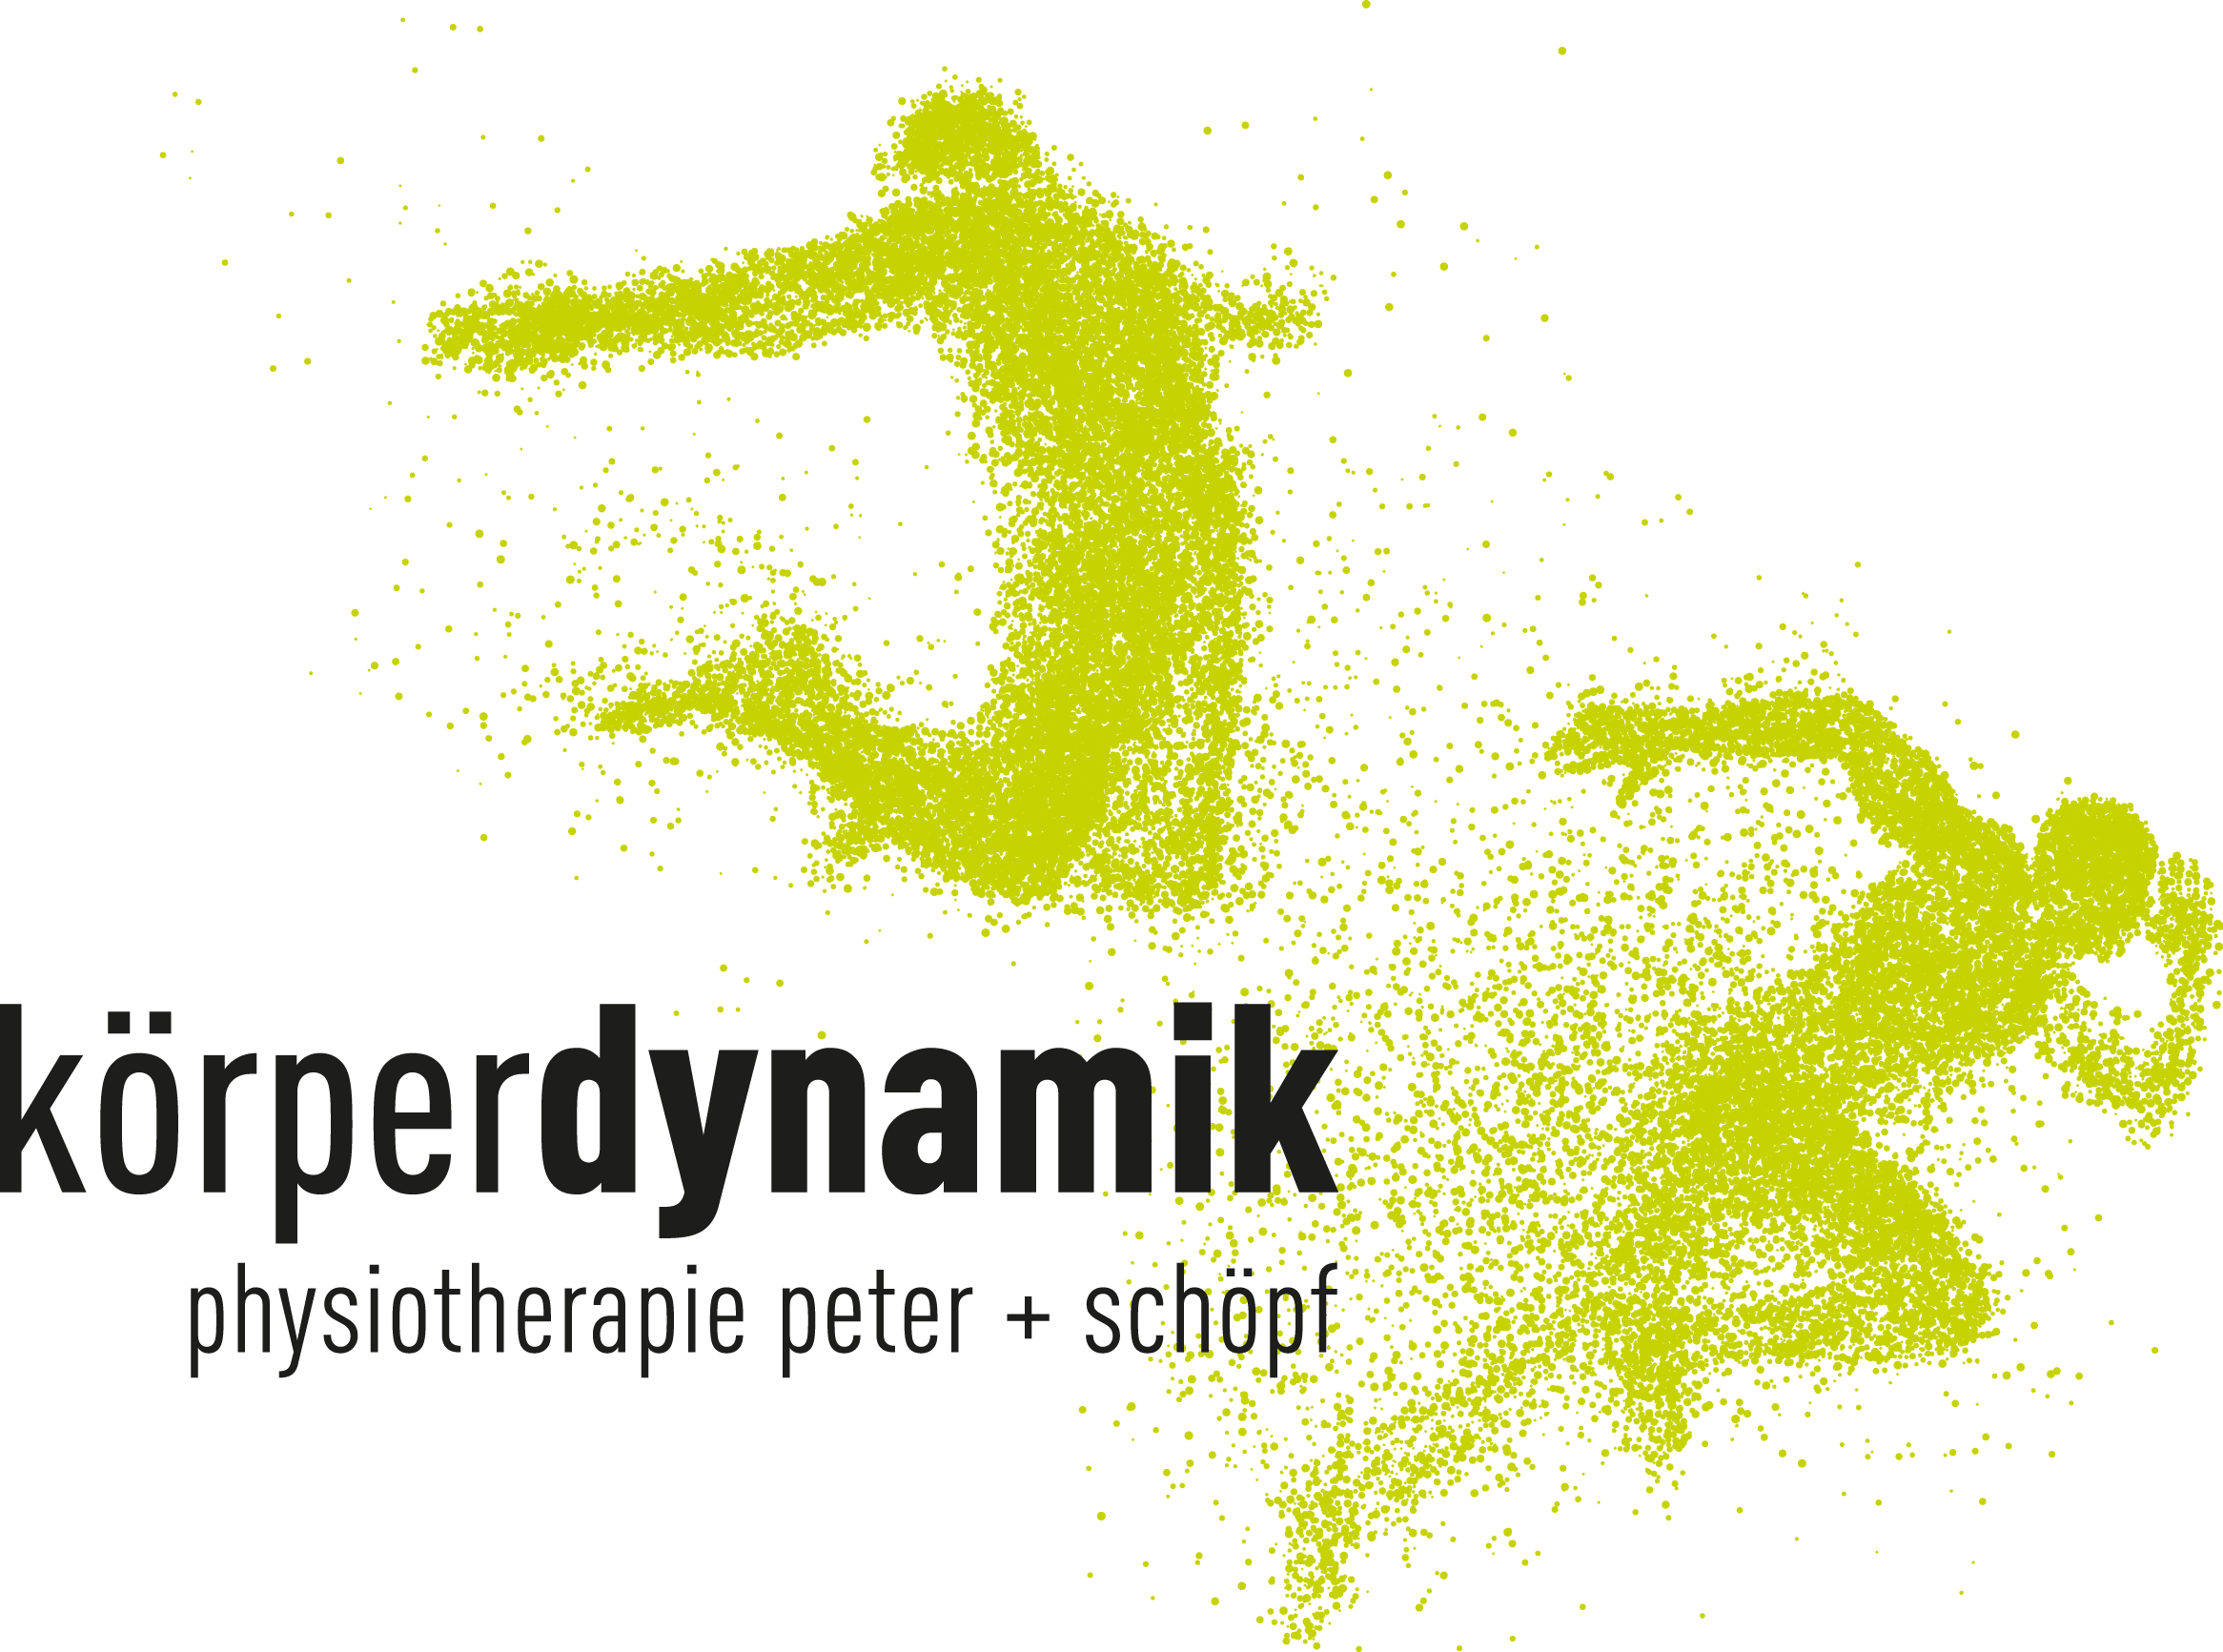 Schriftzug koerperdynamik mit zwei grünen Figuren in sportlicher Bewegung, darunter ein weiterer Schriftzug der lautet: physiotherapie peter + schöpf